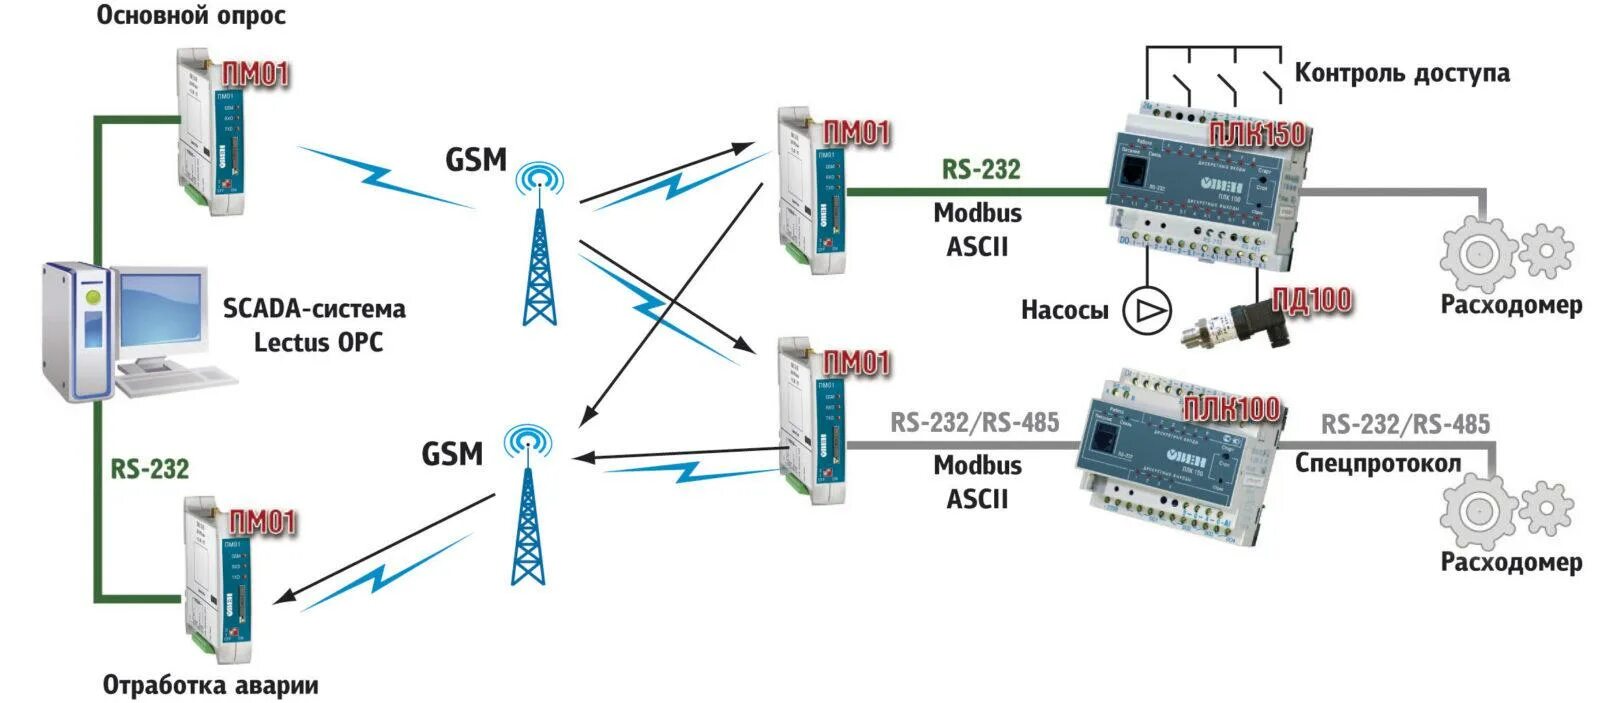 Рс интернет. Пм01 GSM/GPRS модем. Пм01 GSM/GPRS модем схема подключения. Овен пм01 GSM/GPRS модем. Схема передачи данных через GSM модем.